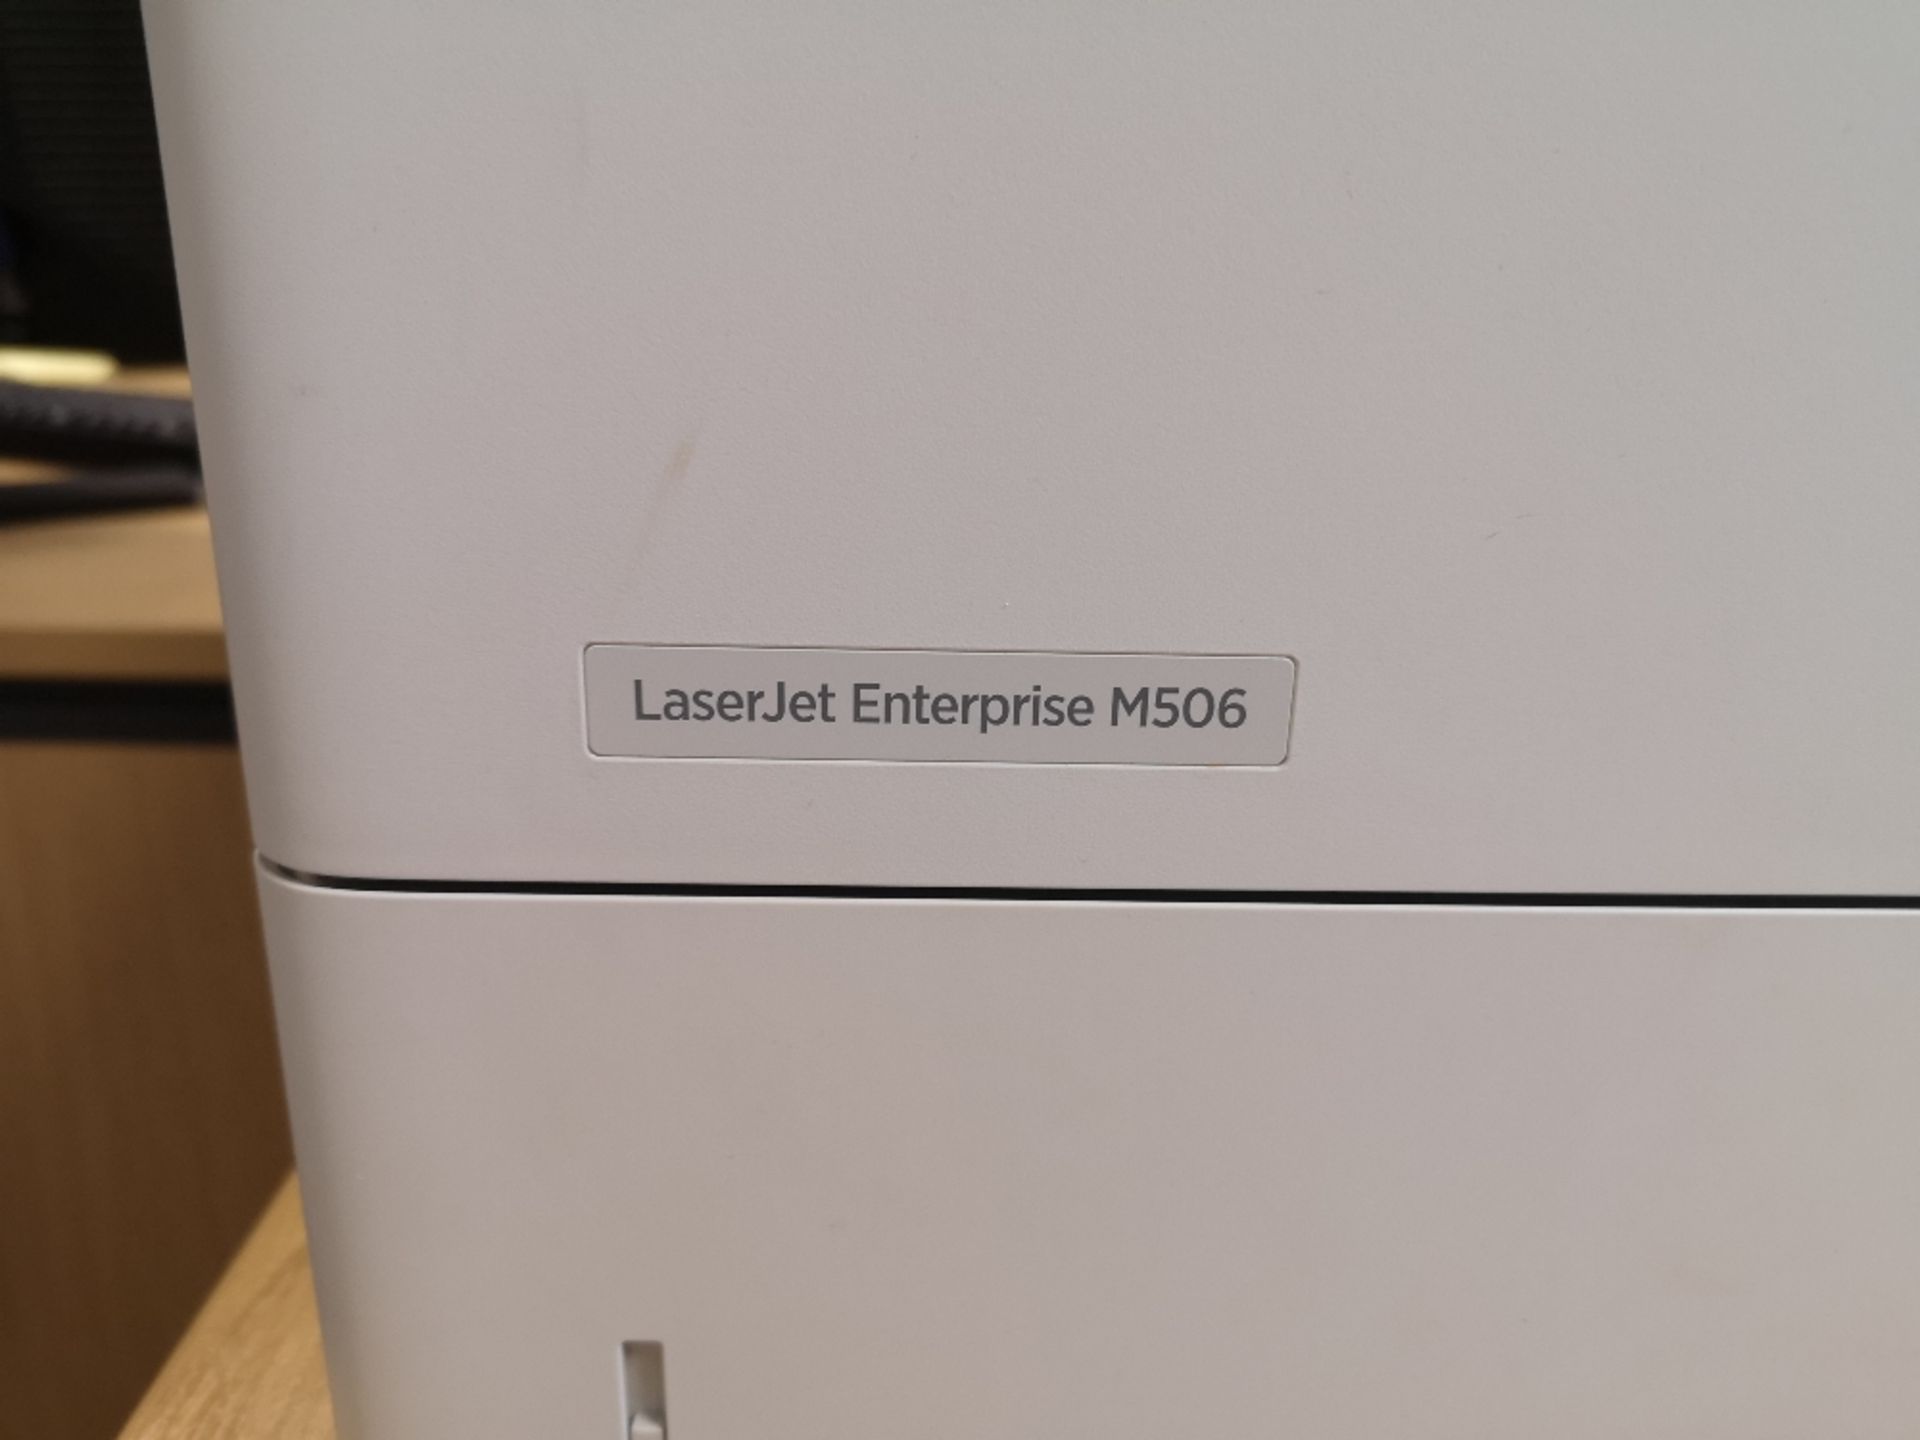 HP Laserjet Enterprise M506 Printer - Image 2 of 2